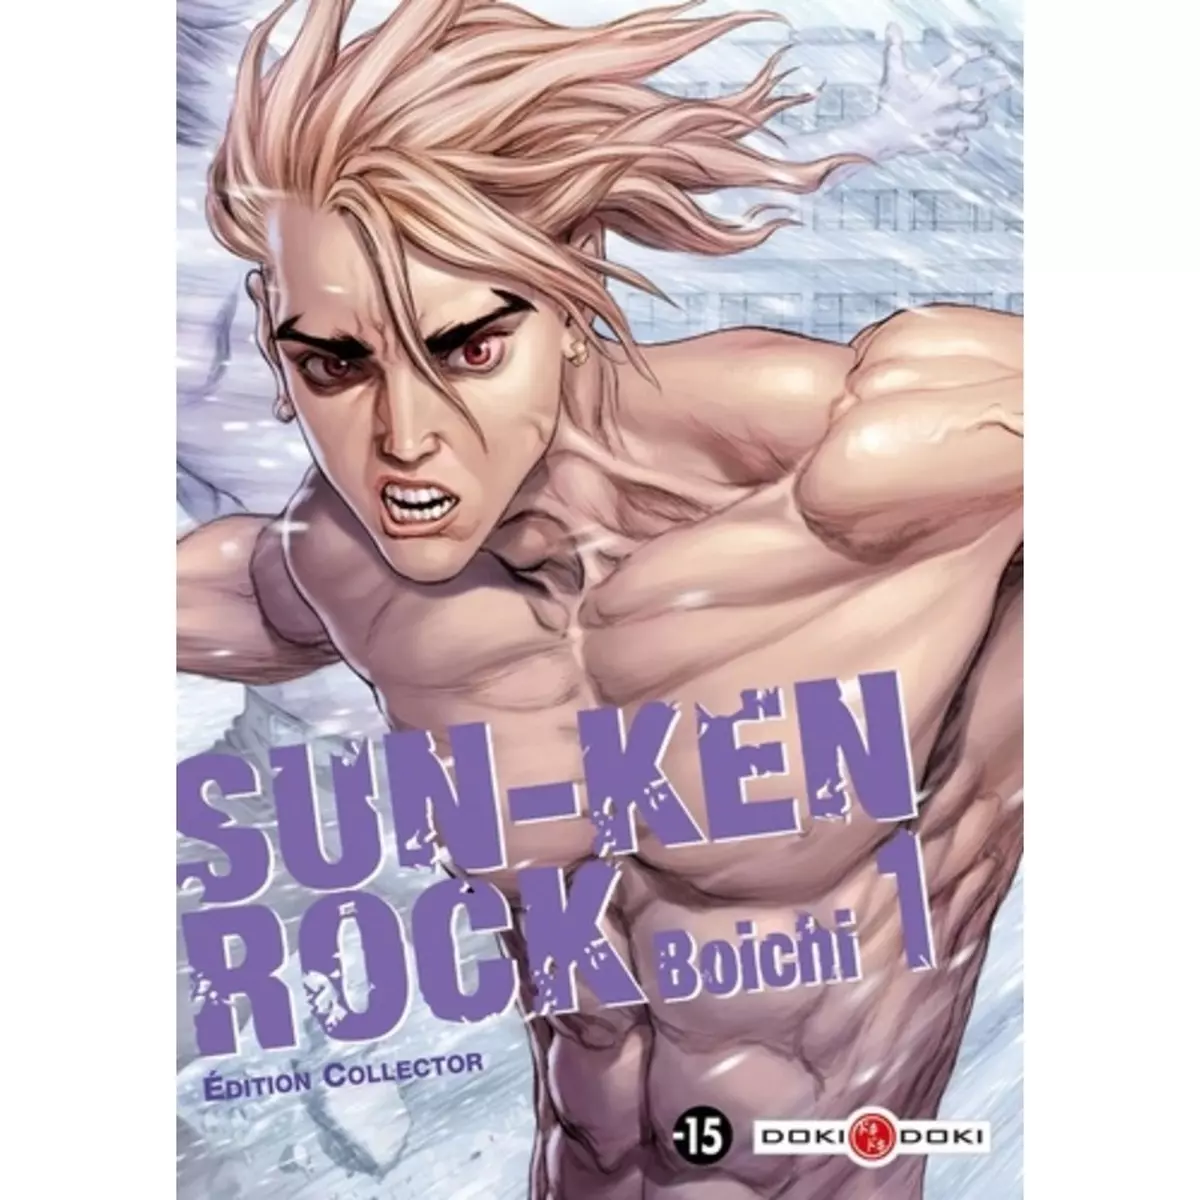  SUN-KEN ROCK TOME 1 . AVEC 1 CARTE POSTALE EXCLUSIVE, EDITION COLLECTOR, Boichi